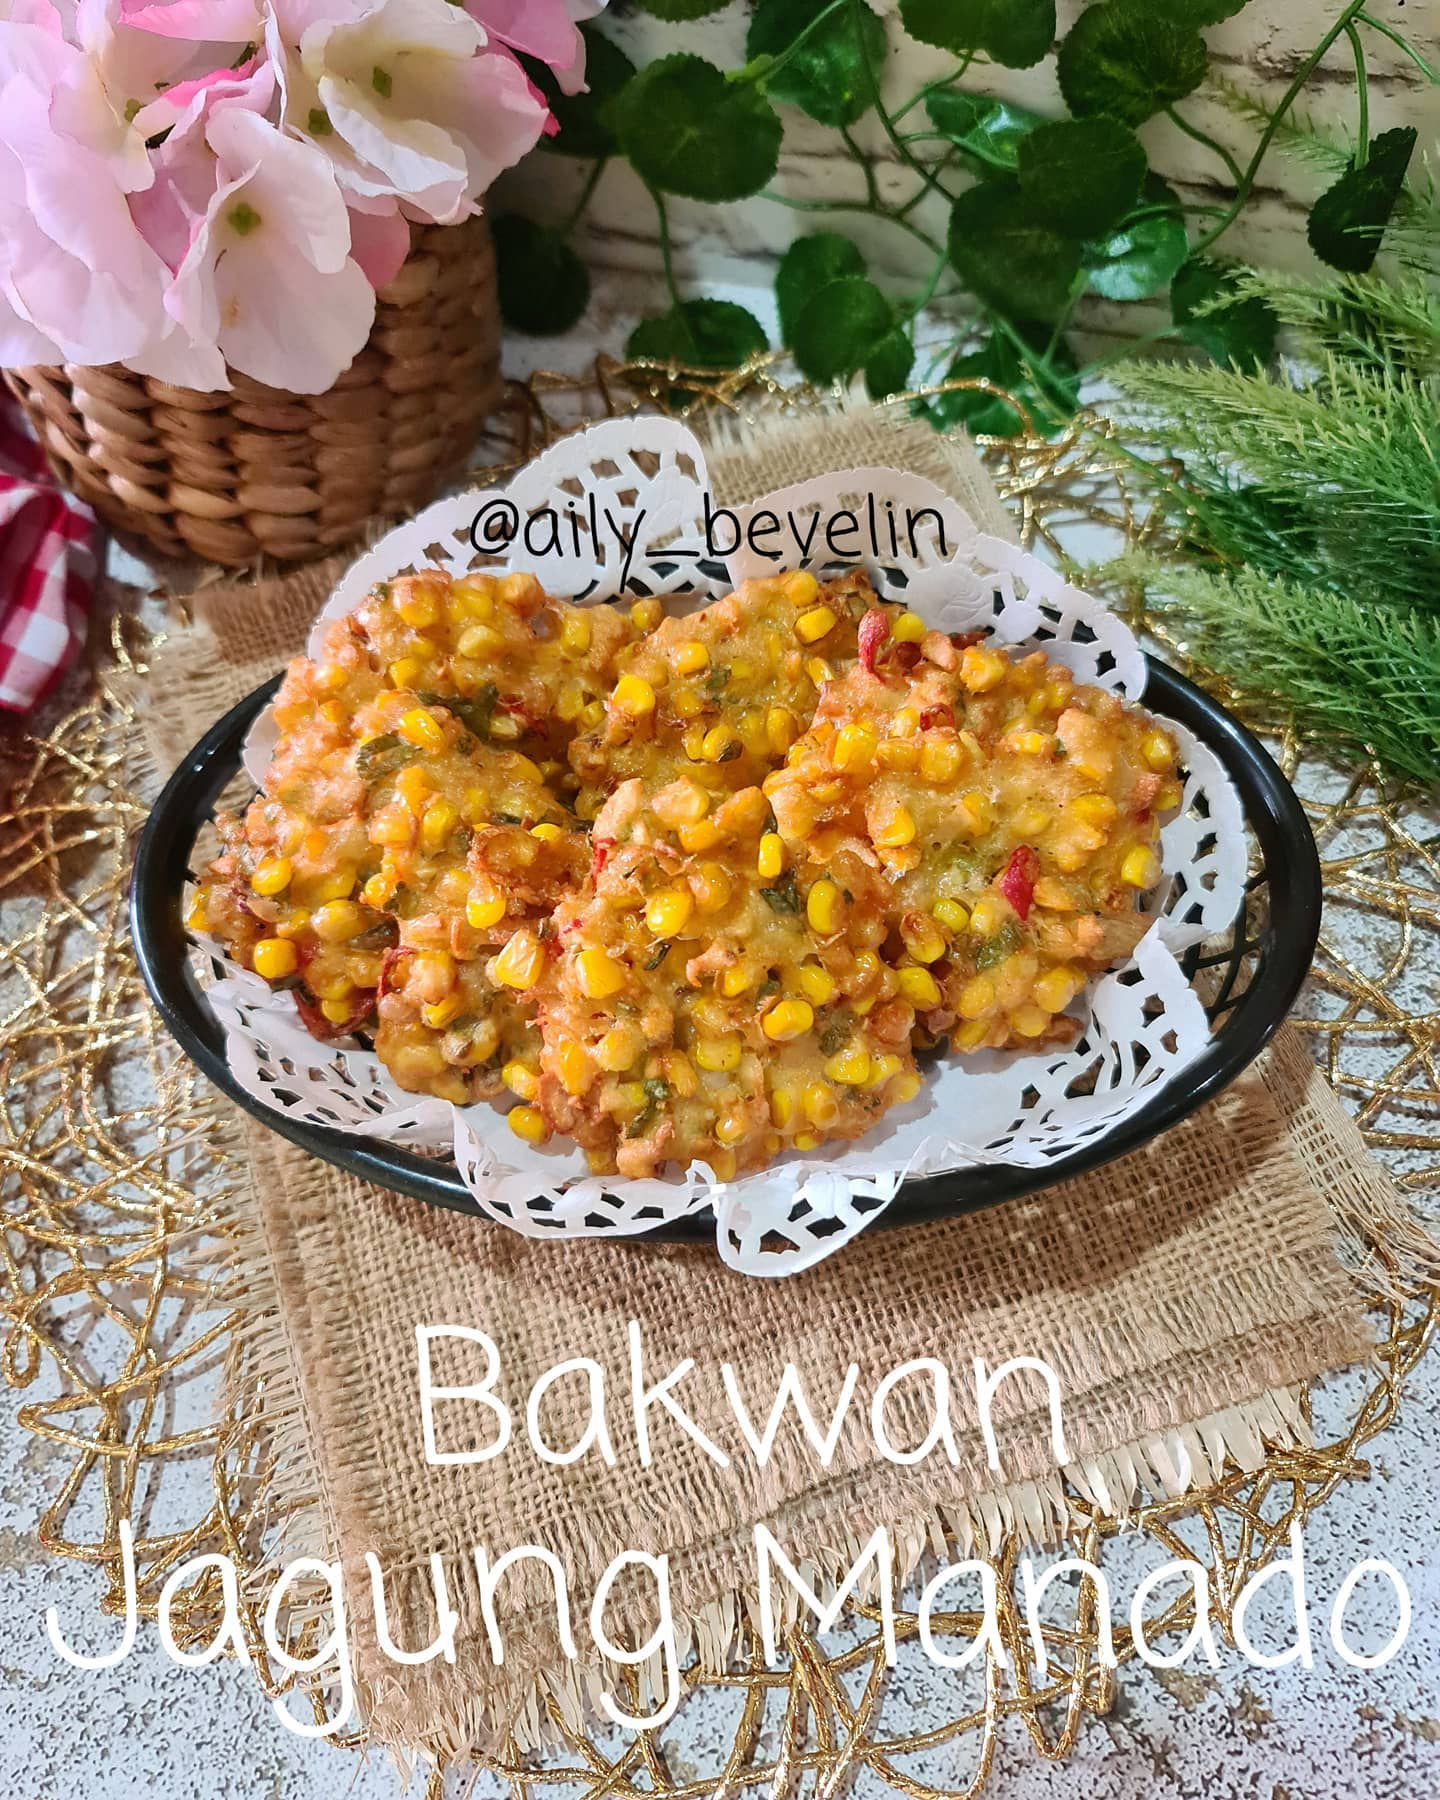 Resep Bakwan Jagung MAnado Sederhana